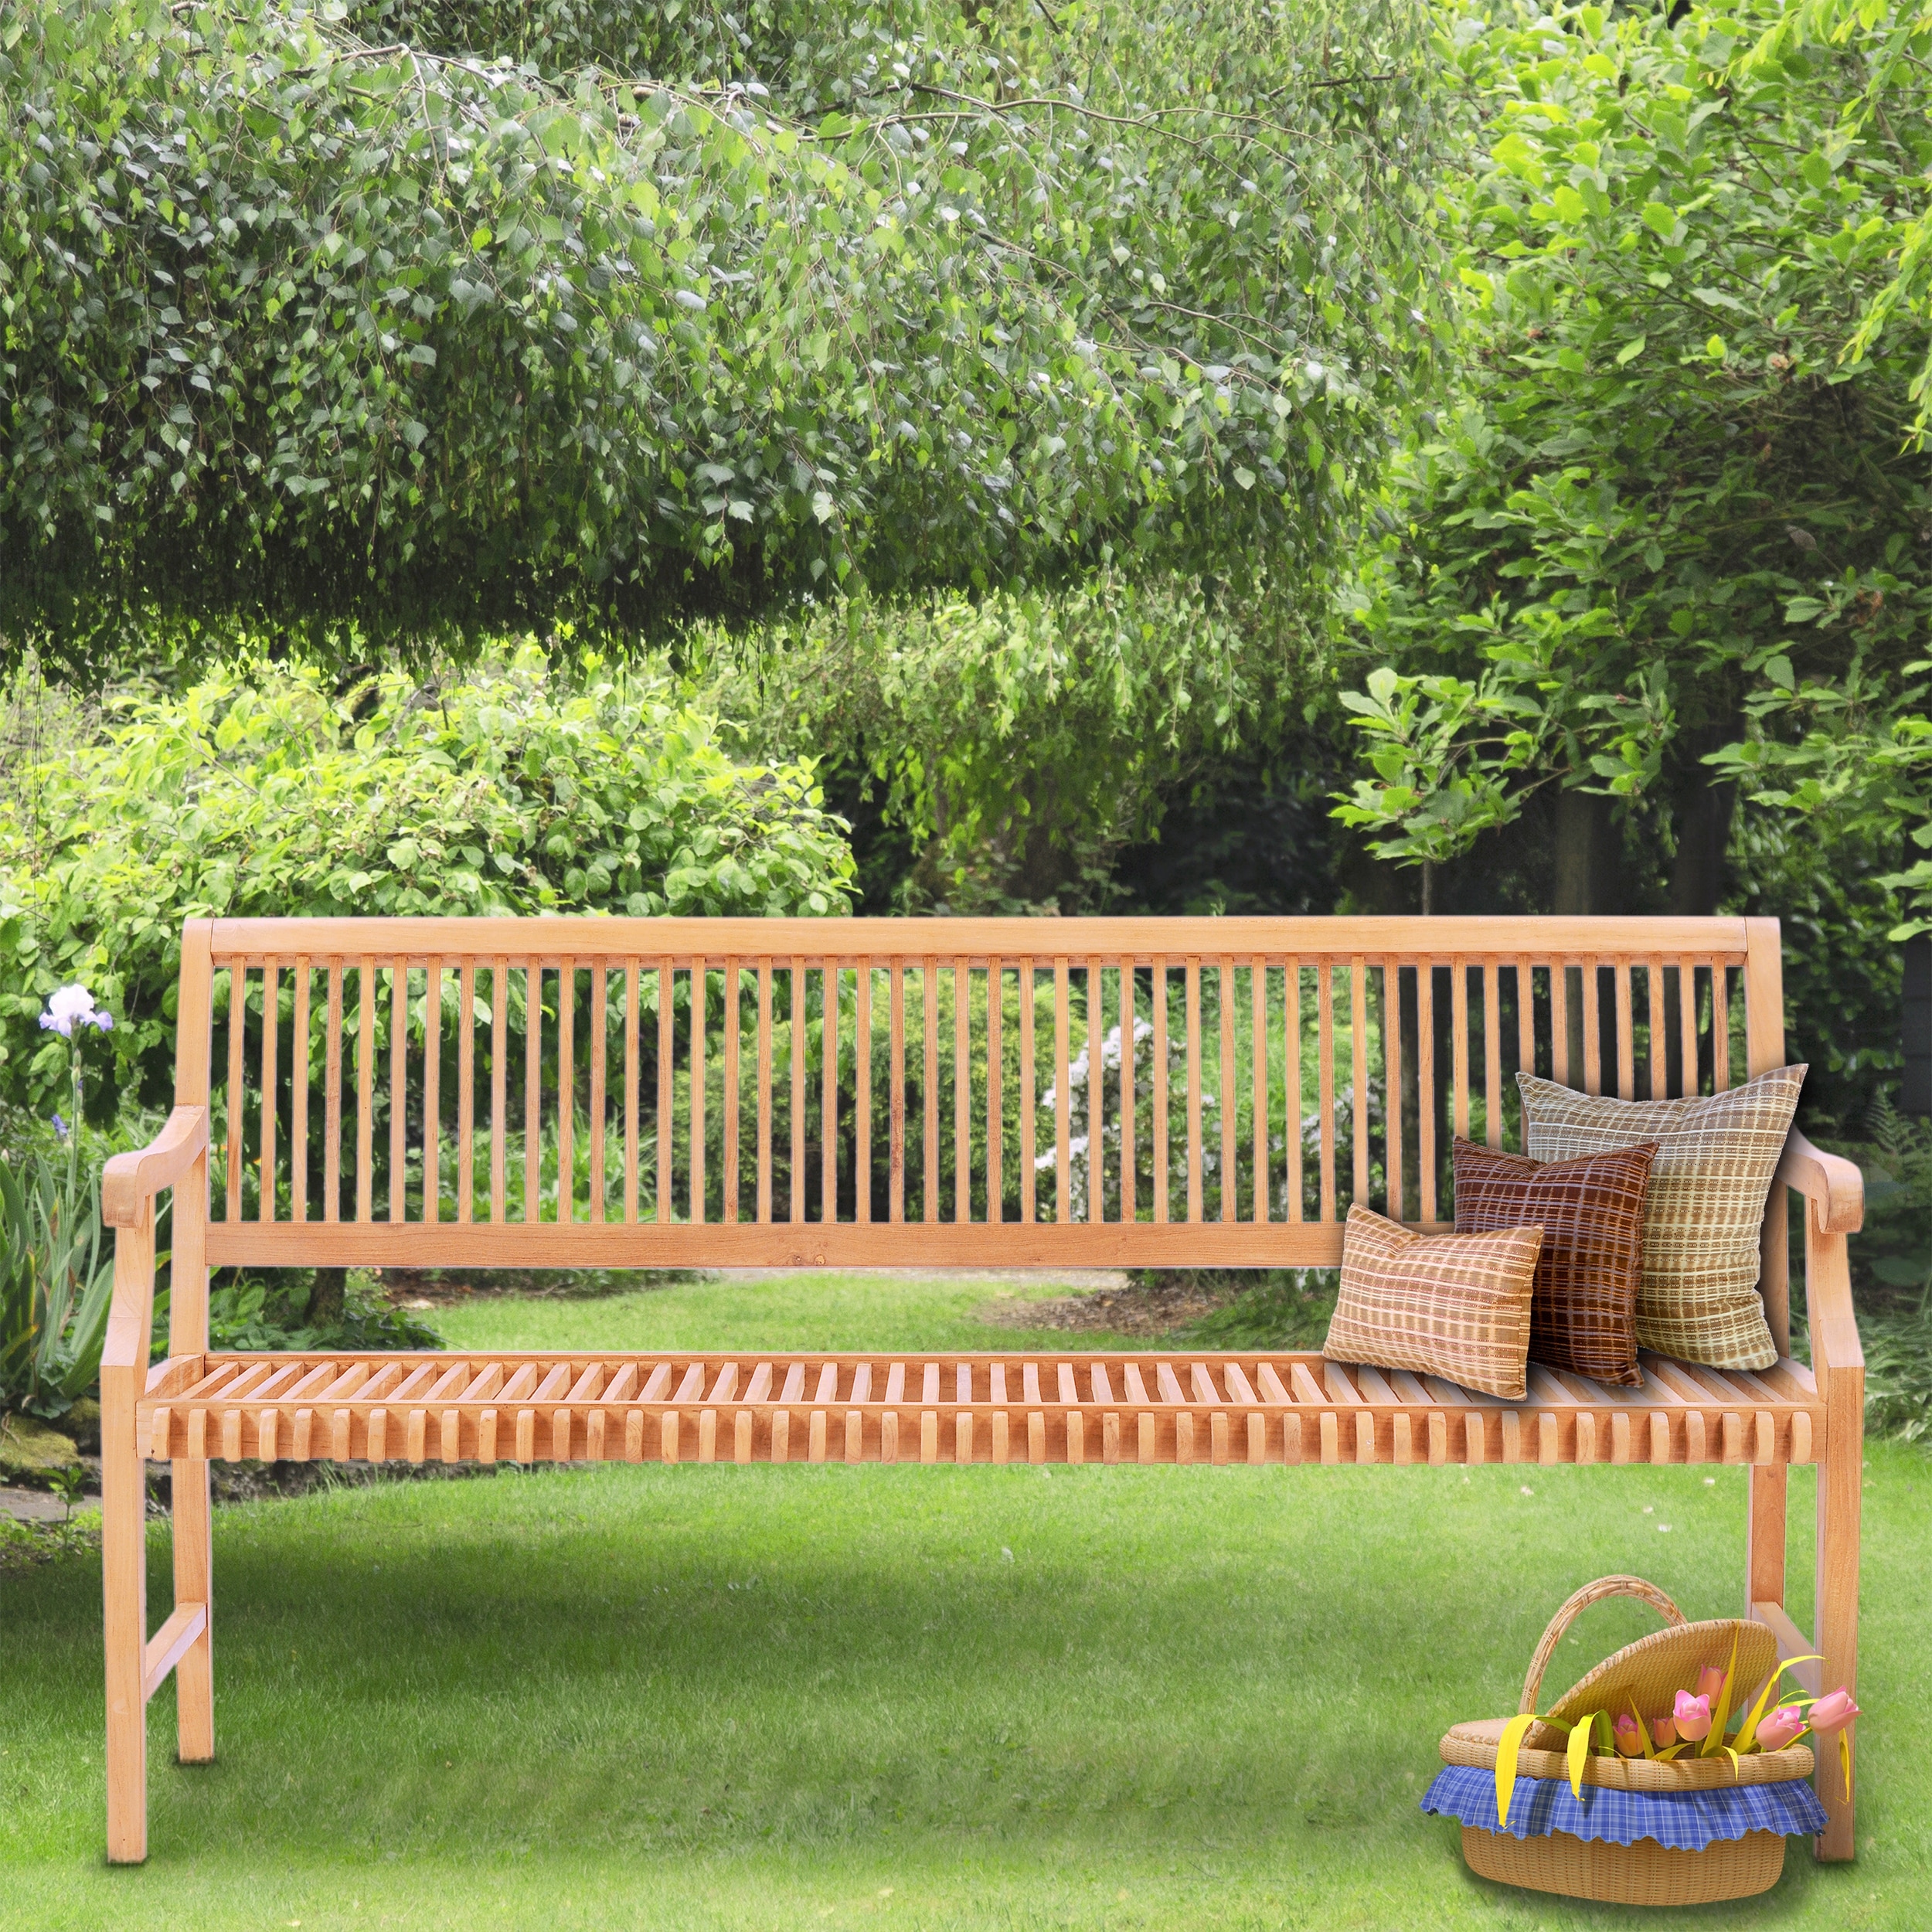 Chic Teak Castle Outdoor Teak Wood Patio Garden Bench With Arms 6 Foot Overstock 31411465